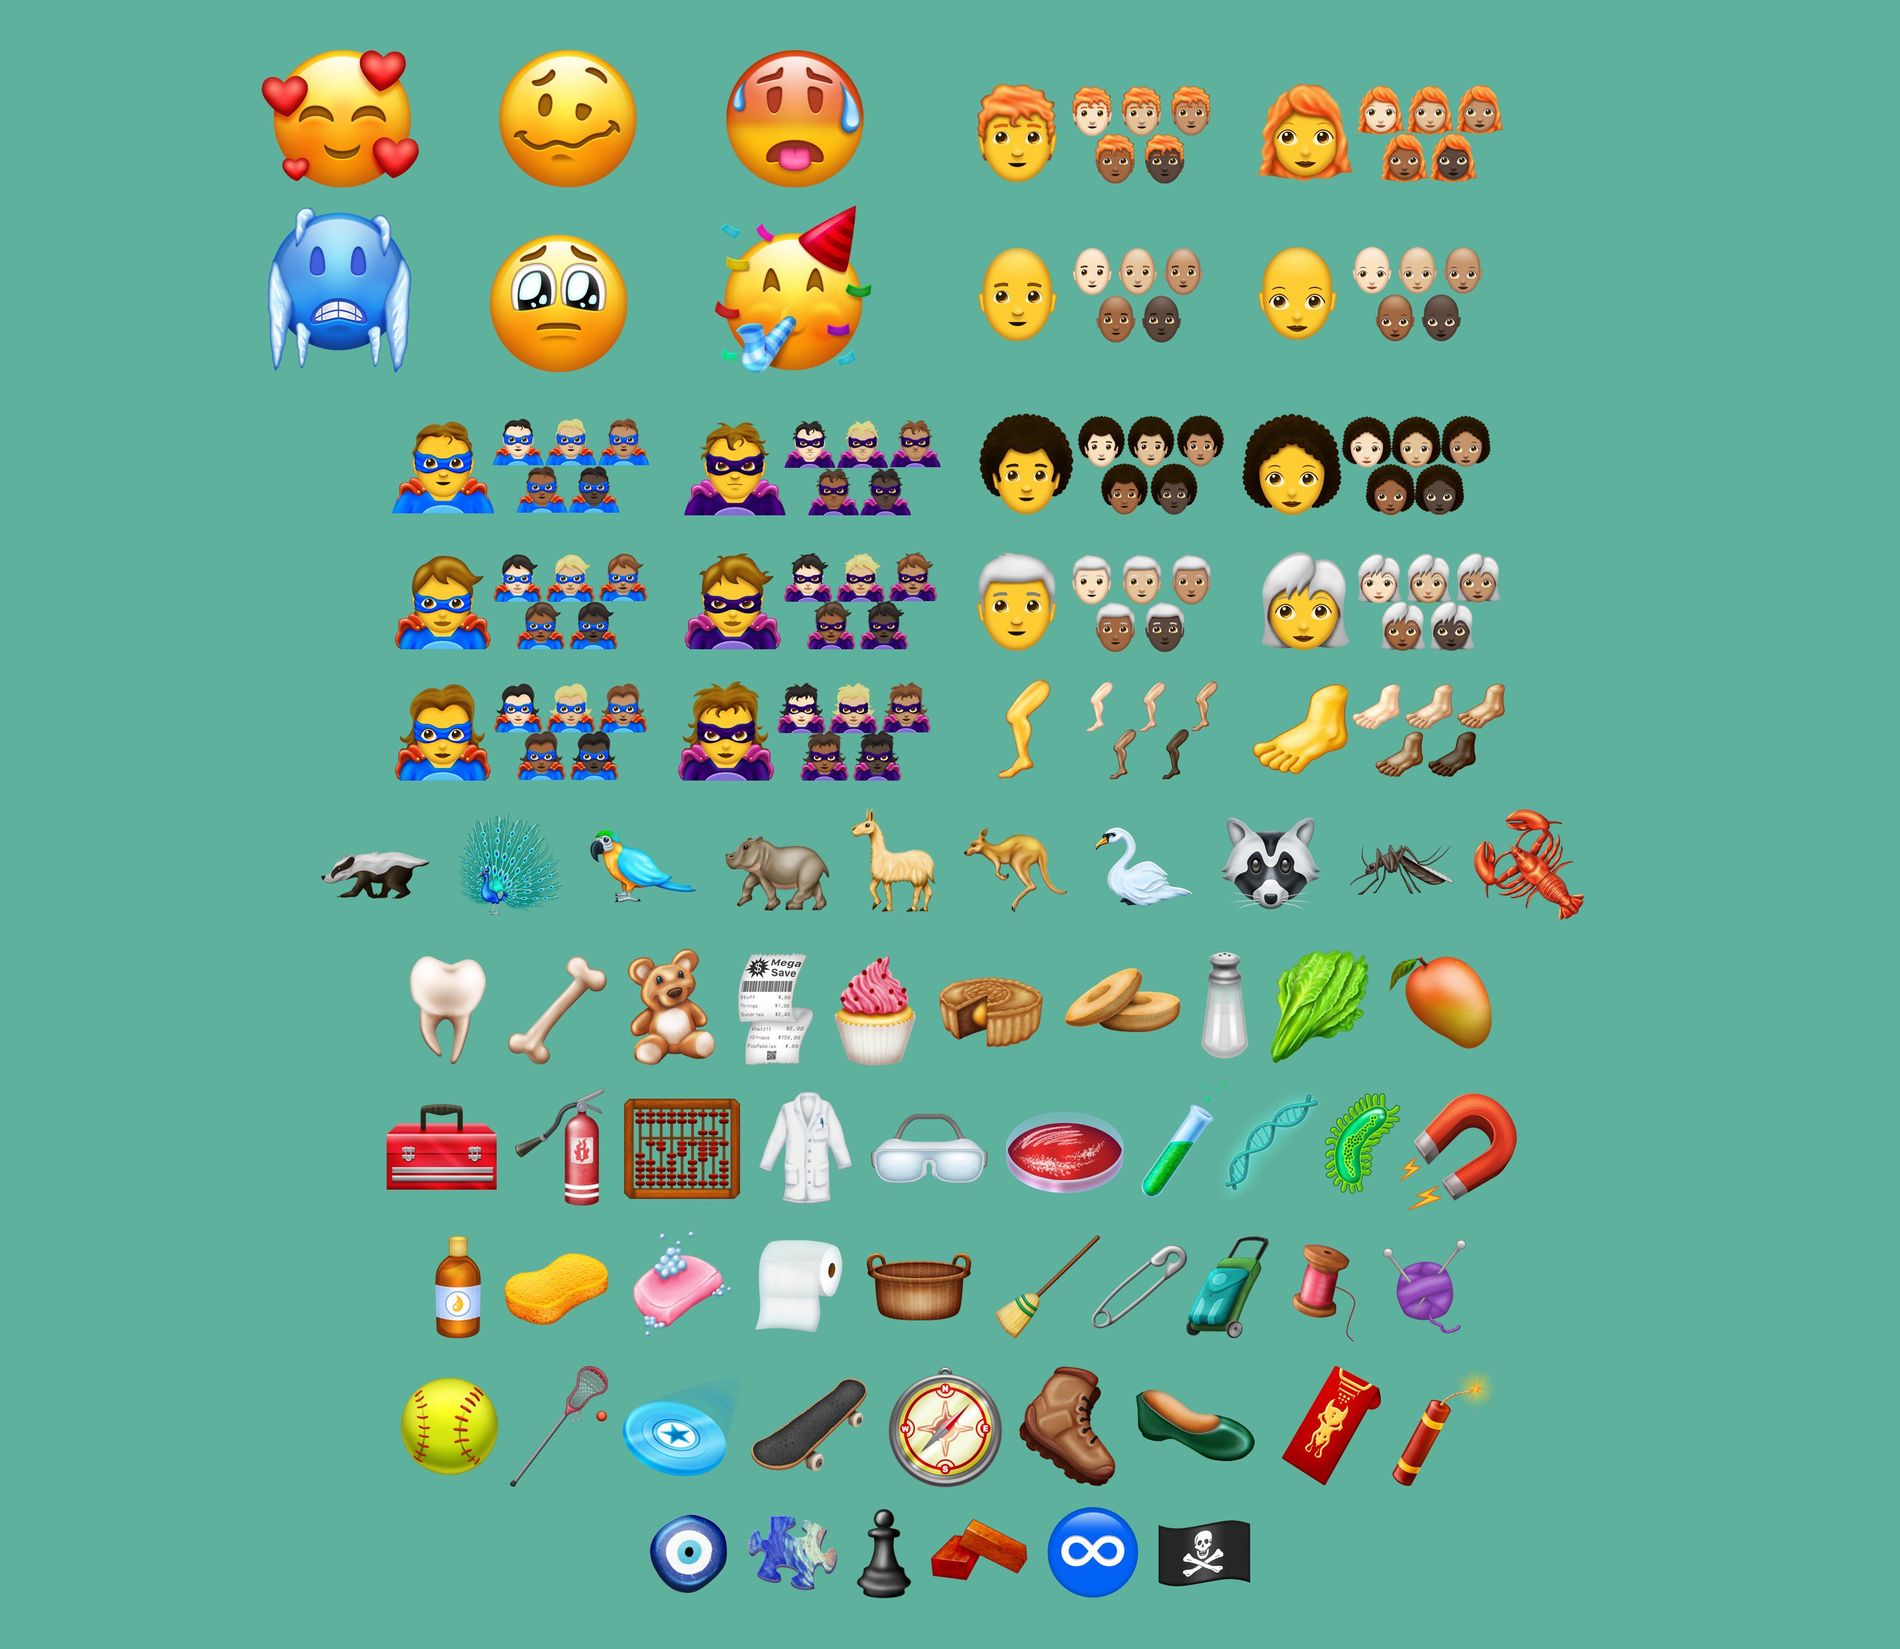 Bagel, magnet eller vaskebjørn? Det blir mange valgmuligheter når neste oppdatering av emojis kommer.